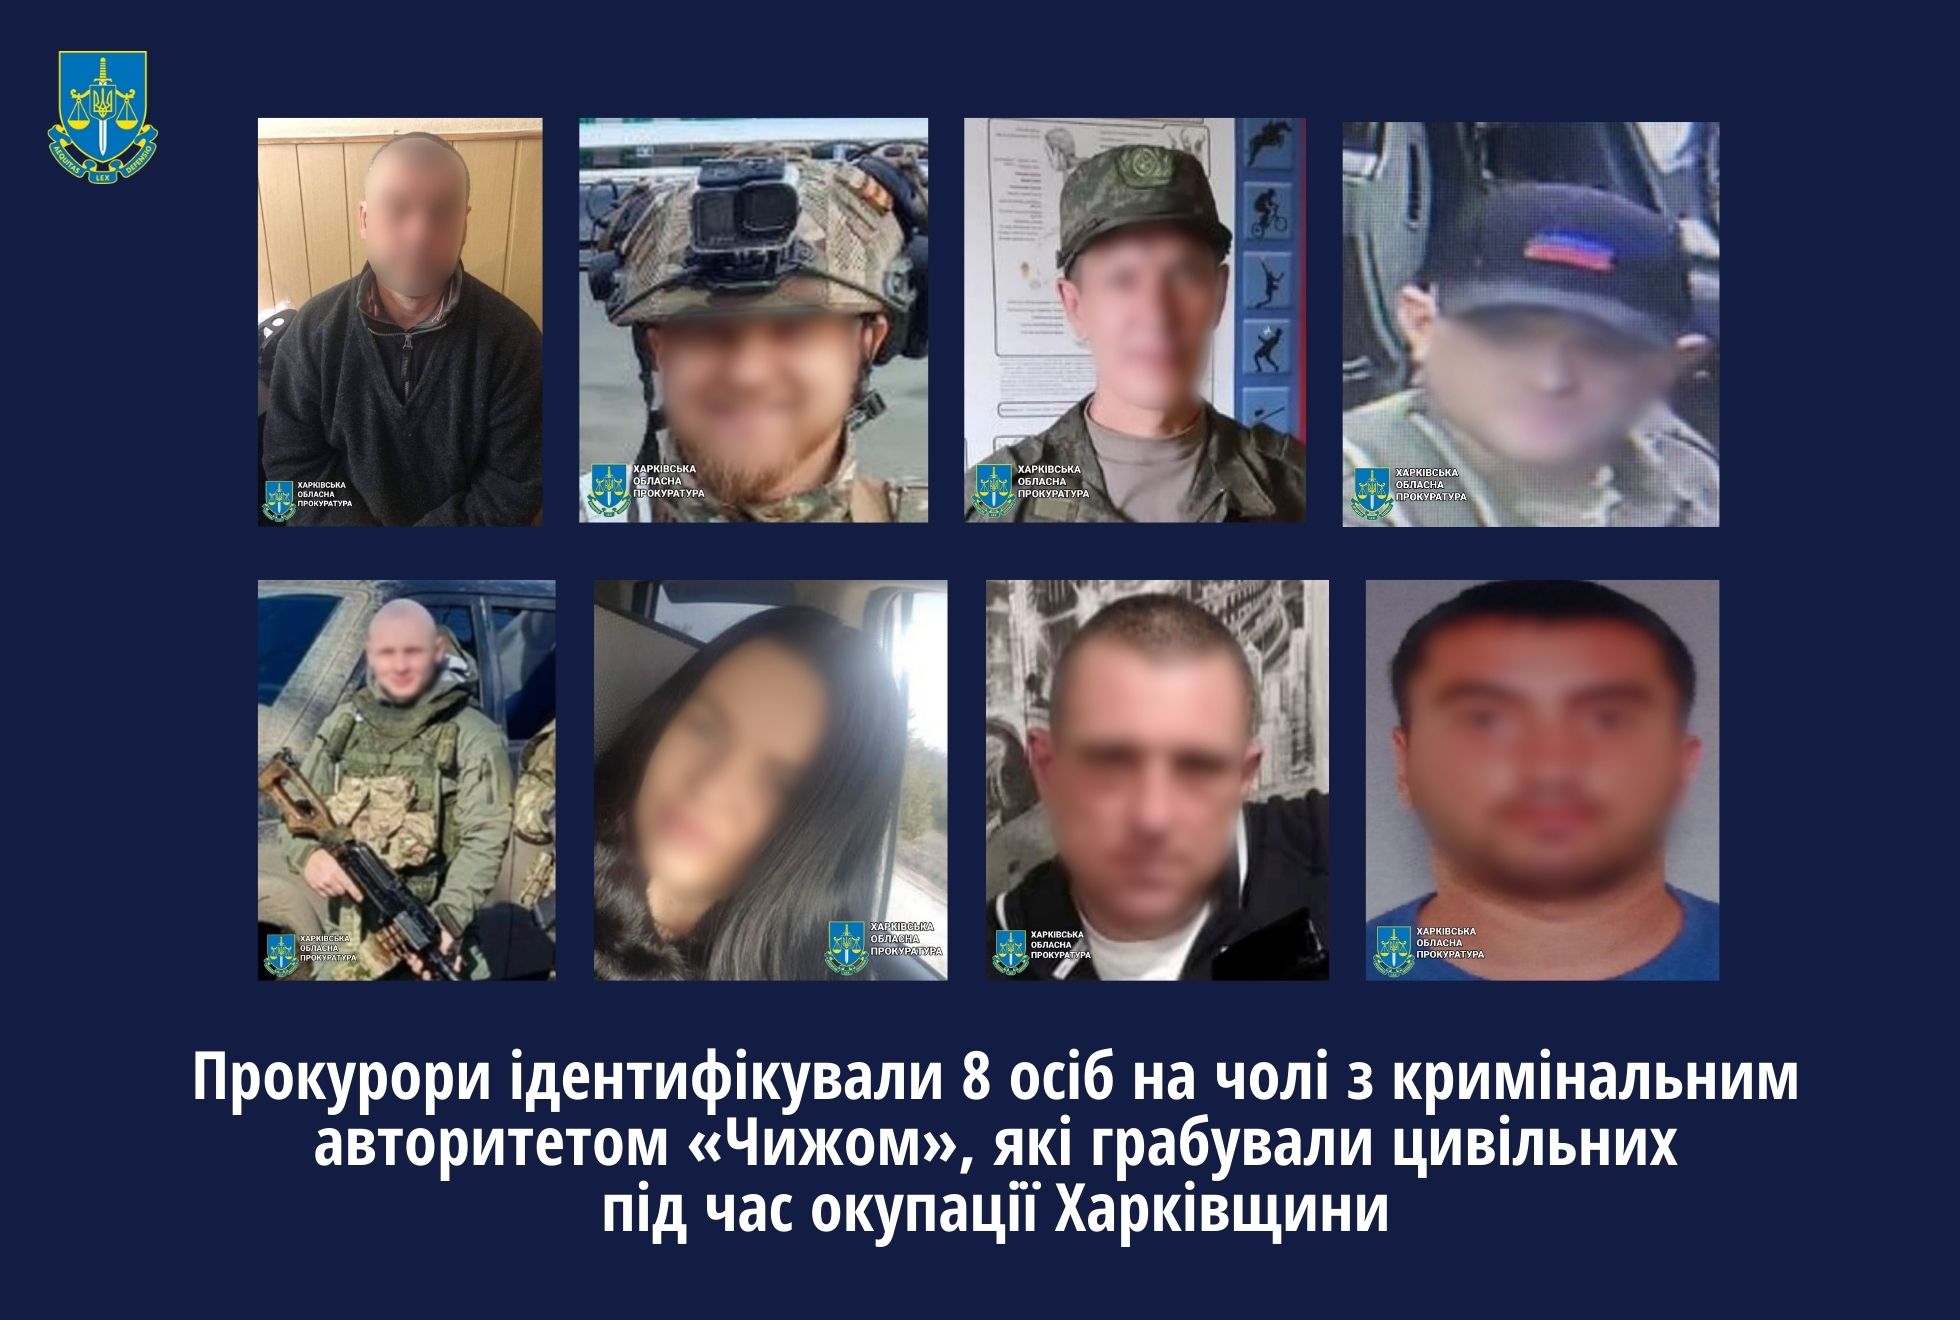 Прокурори ідентифікували 8 осіб на чолі з кримінальним авторитетом «Чижом», які грабували цивільних під час окупації Харківщини